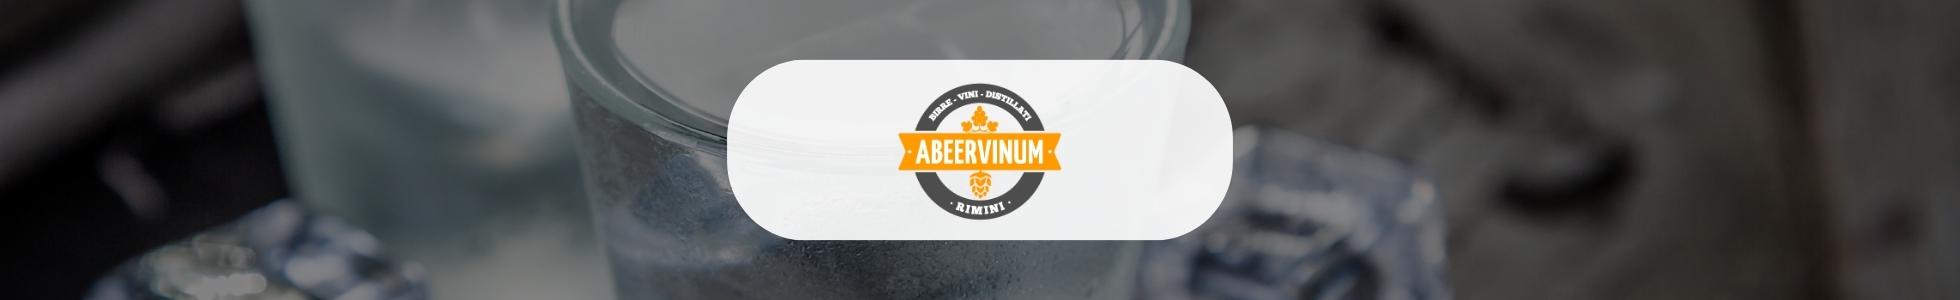 Abeervinum - Shop online wodka